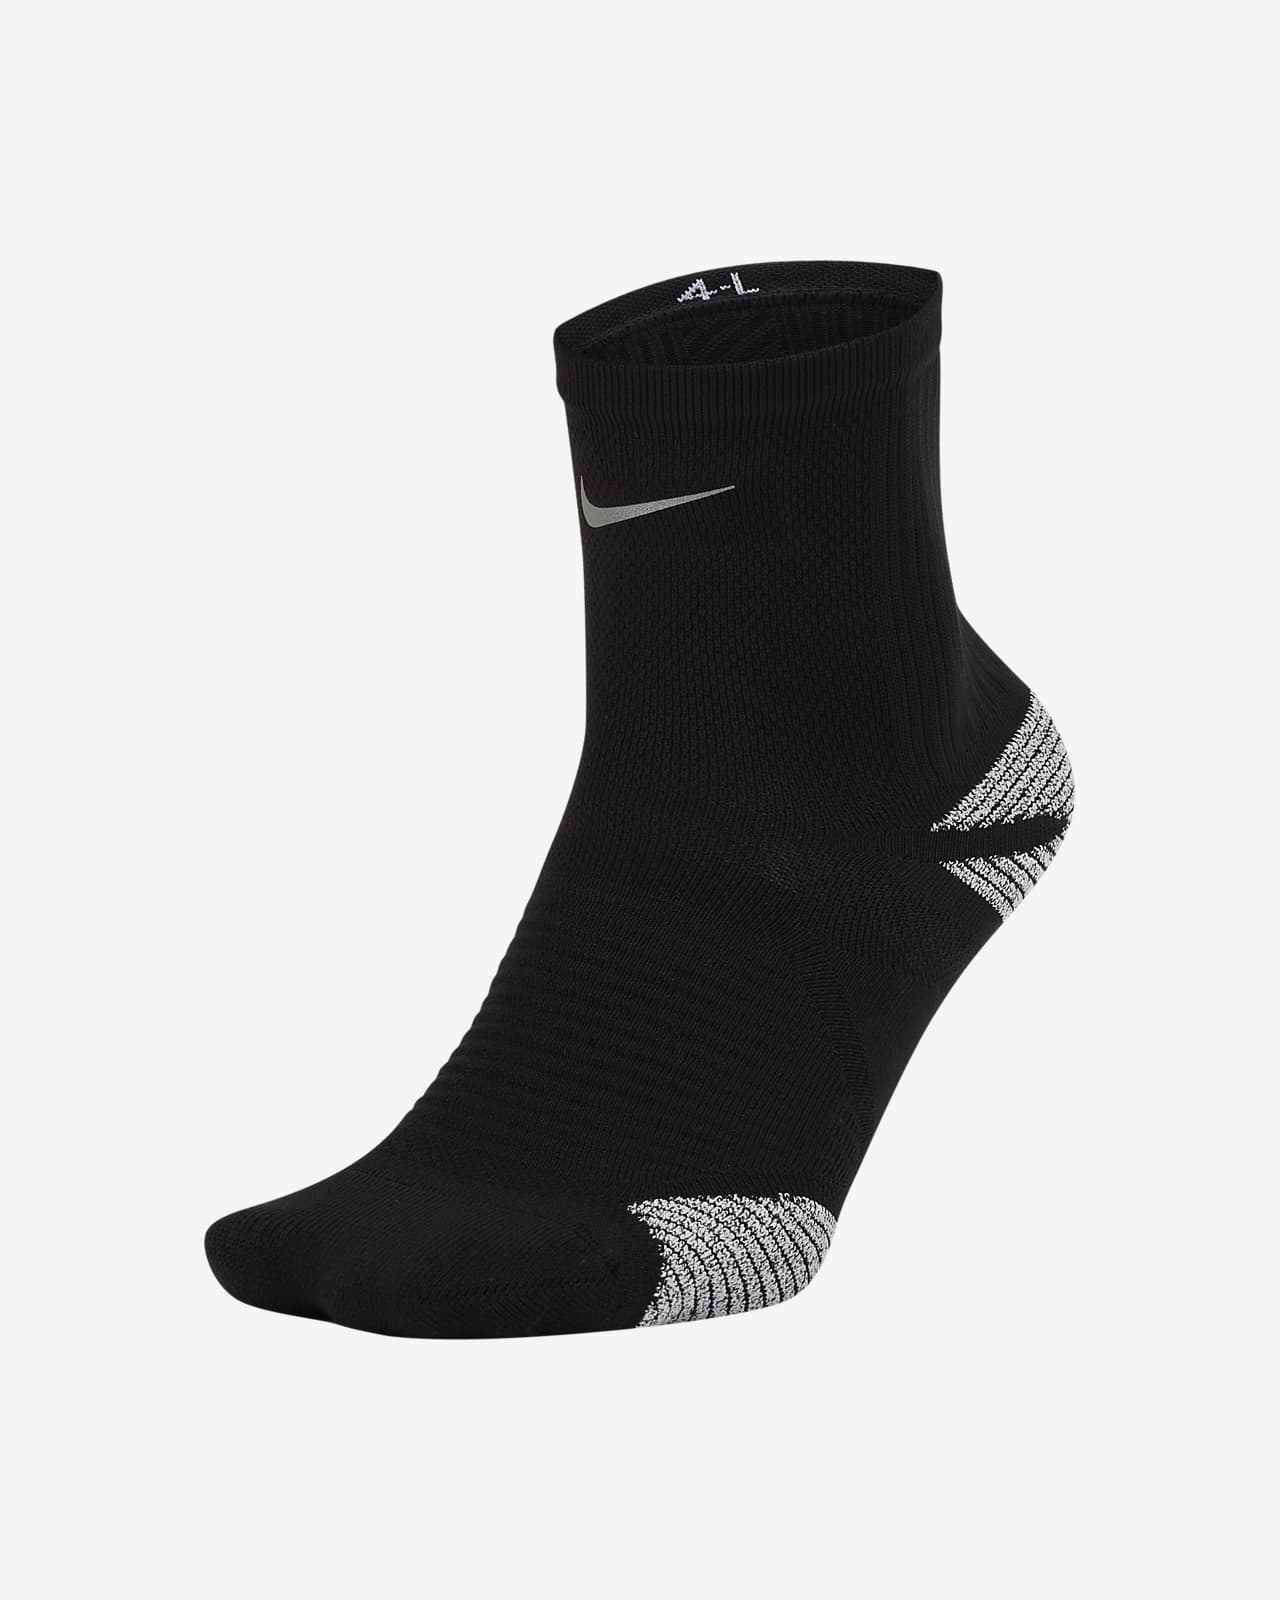 nike grip running socks